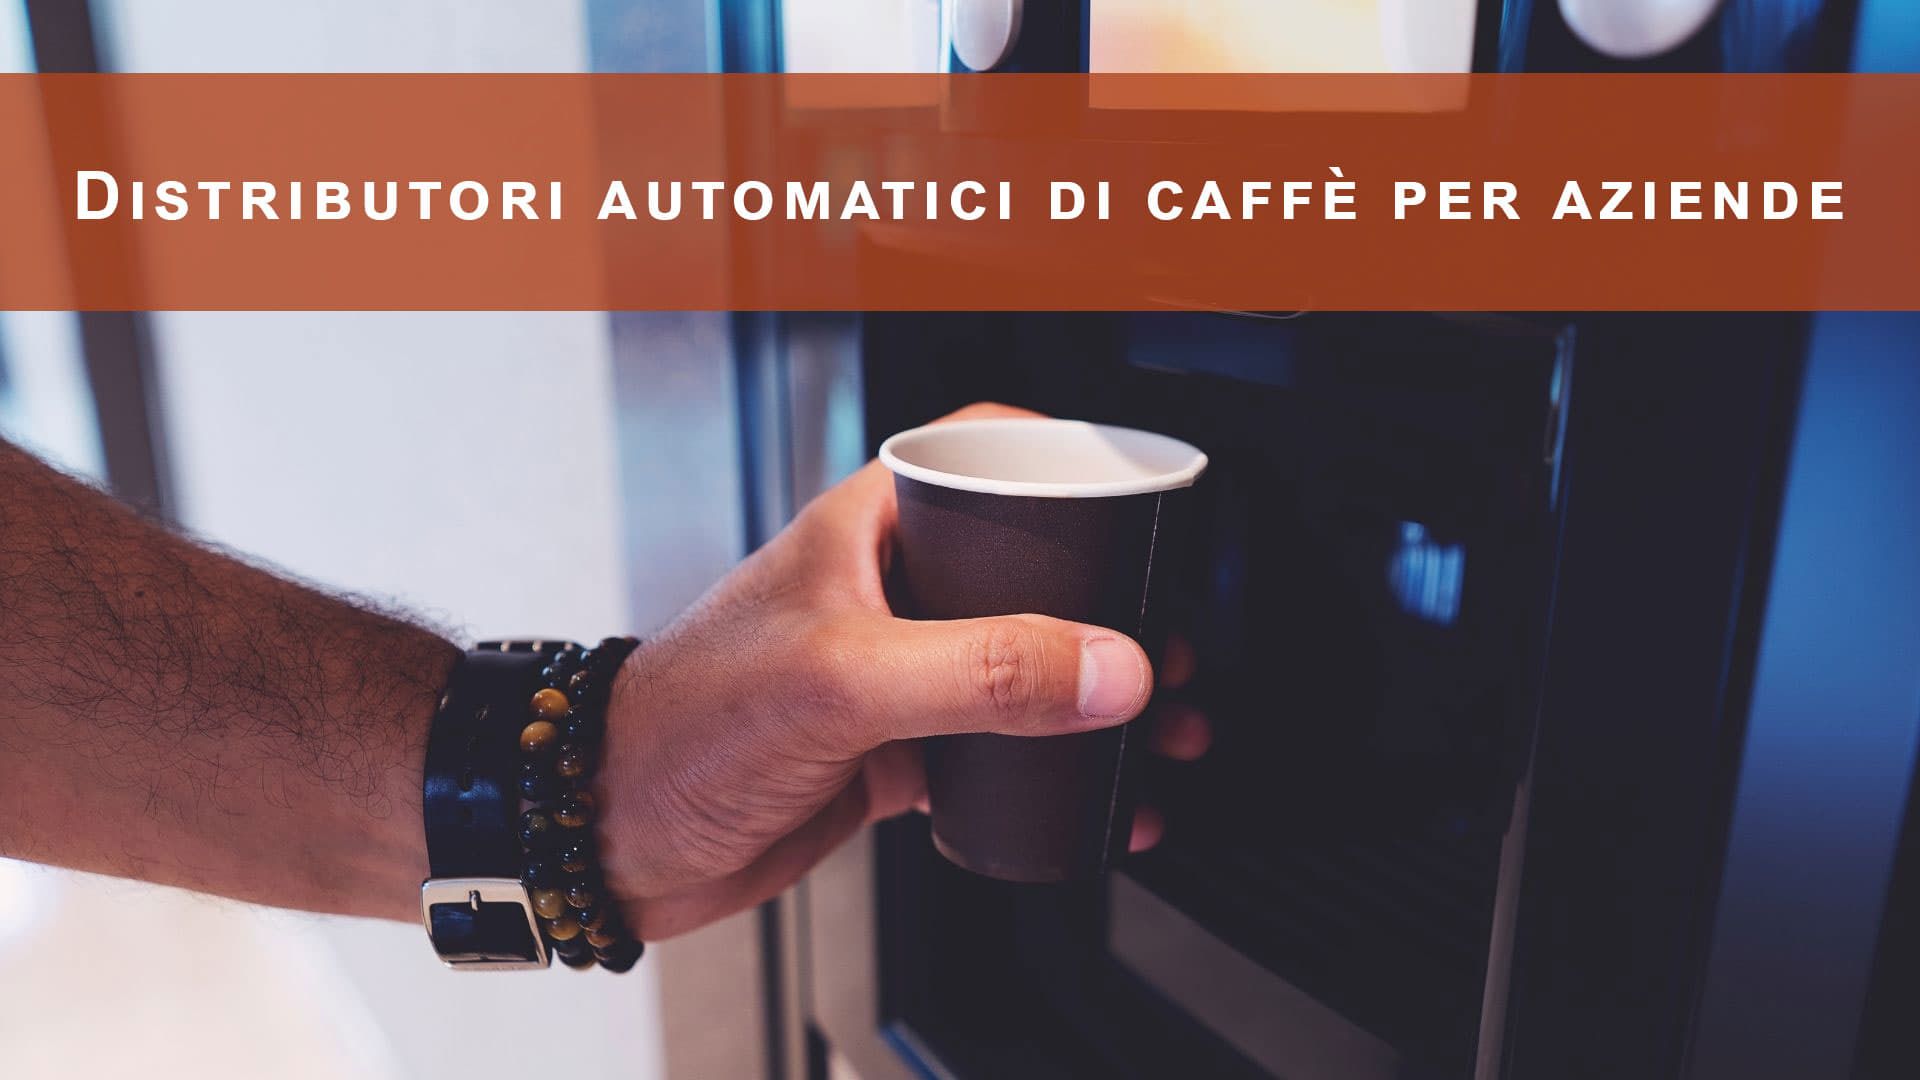 Distributori automatici di caffè per aziende: guida con prezzi e tariffe per scegliere il migliore